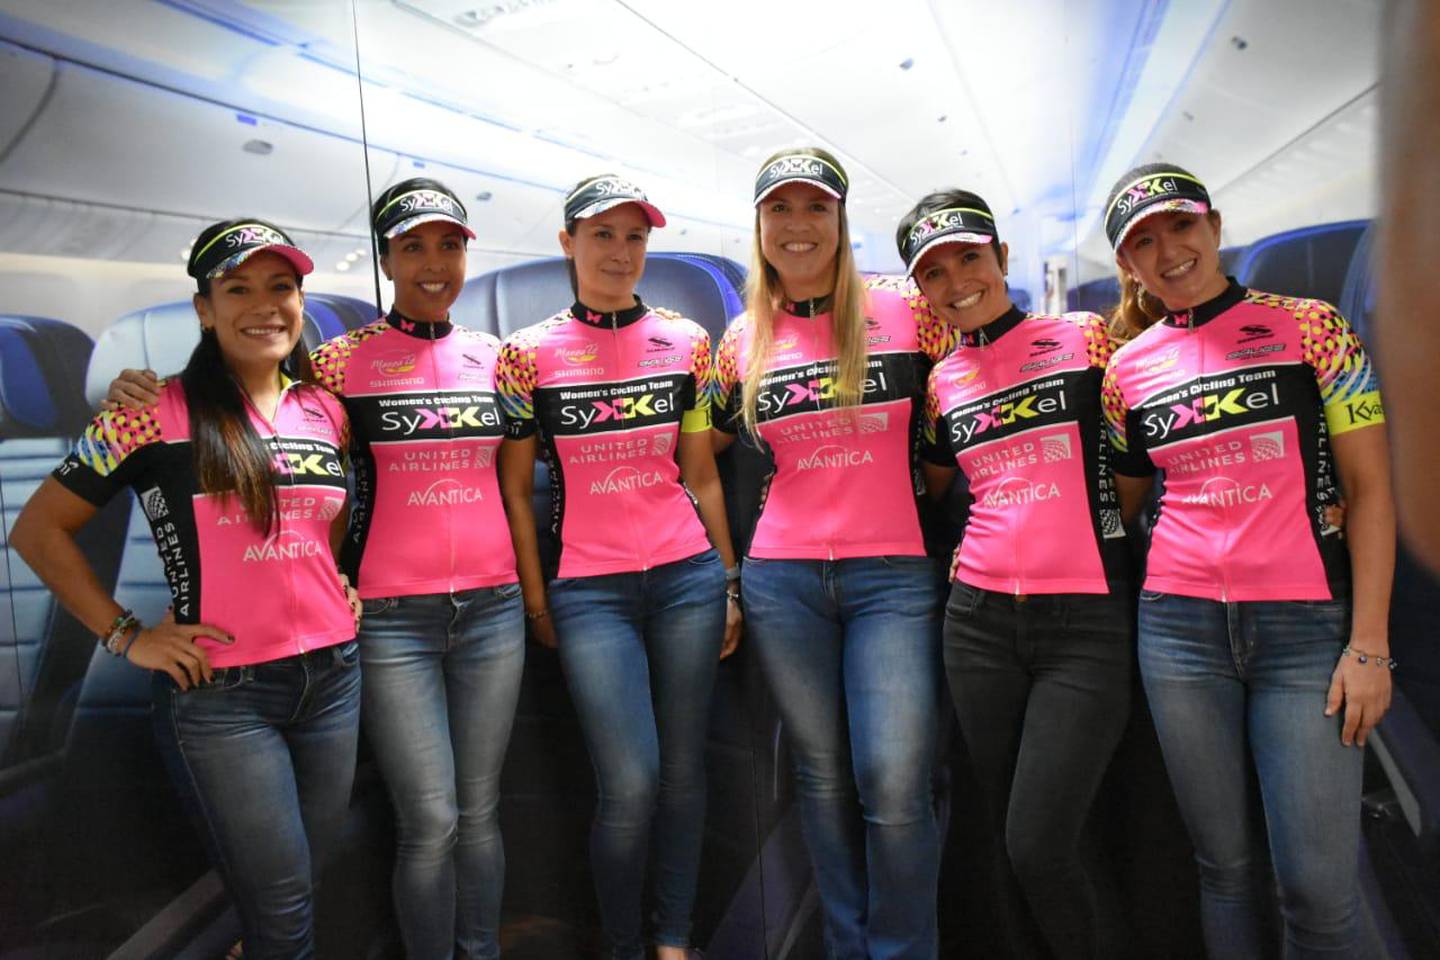 Copa Endurance
18/02/2020
Equipo  de ciclismo femenino Las Sikkelas, que corre en la Copa Endurance
Cortesía Gabriela Barrantes